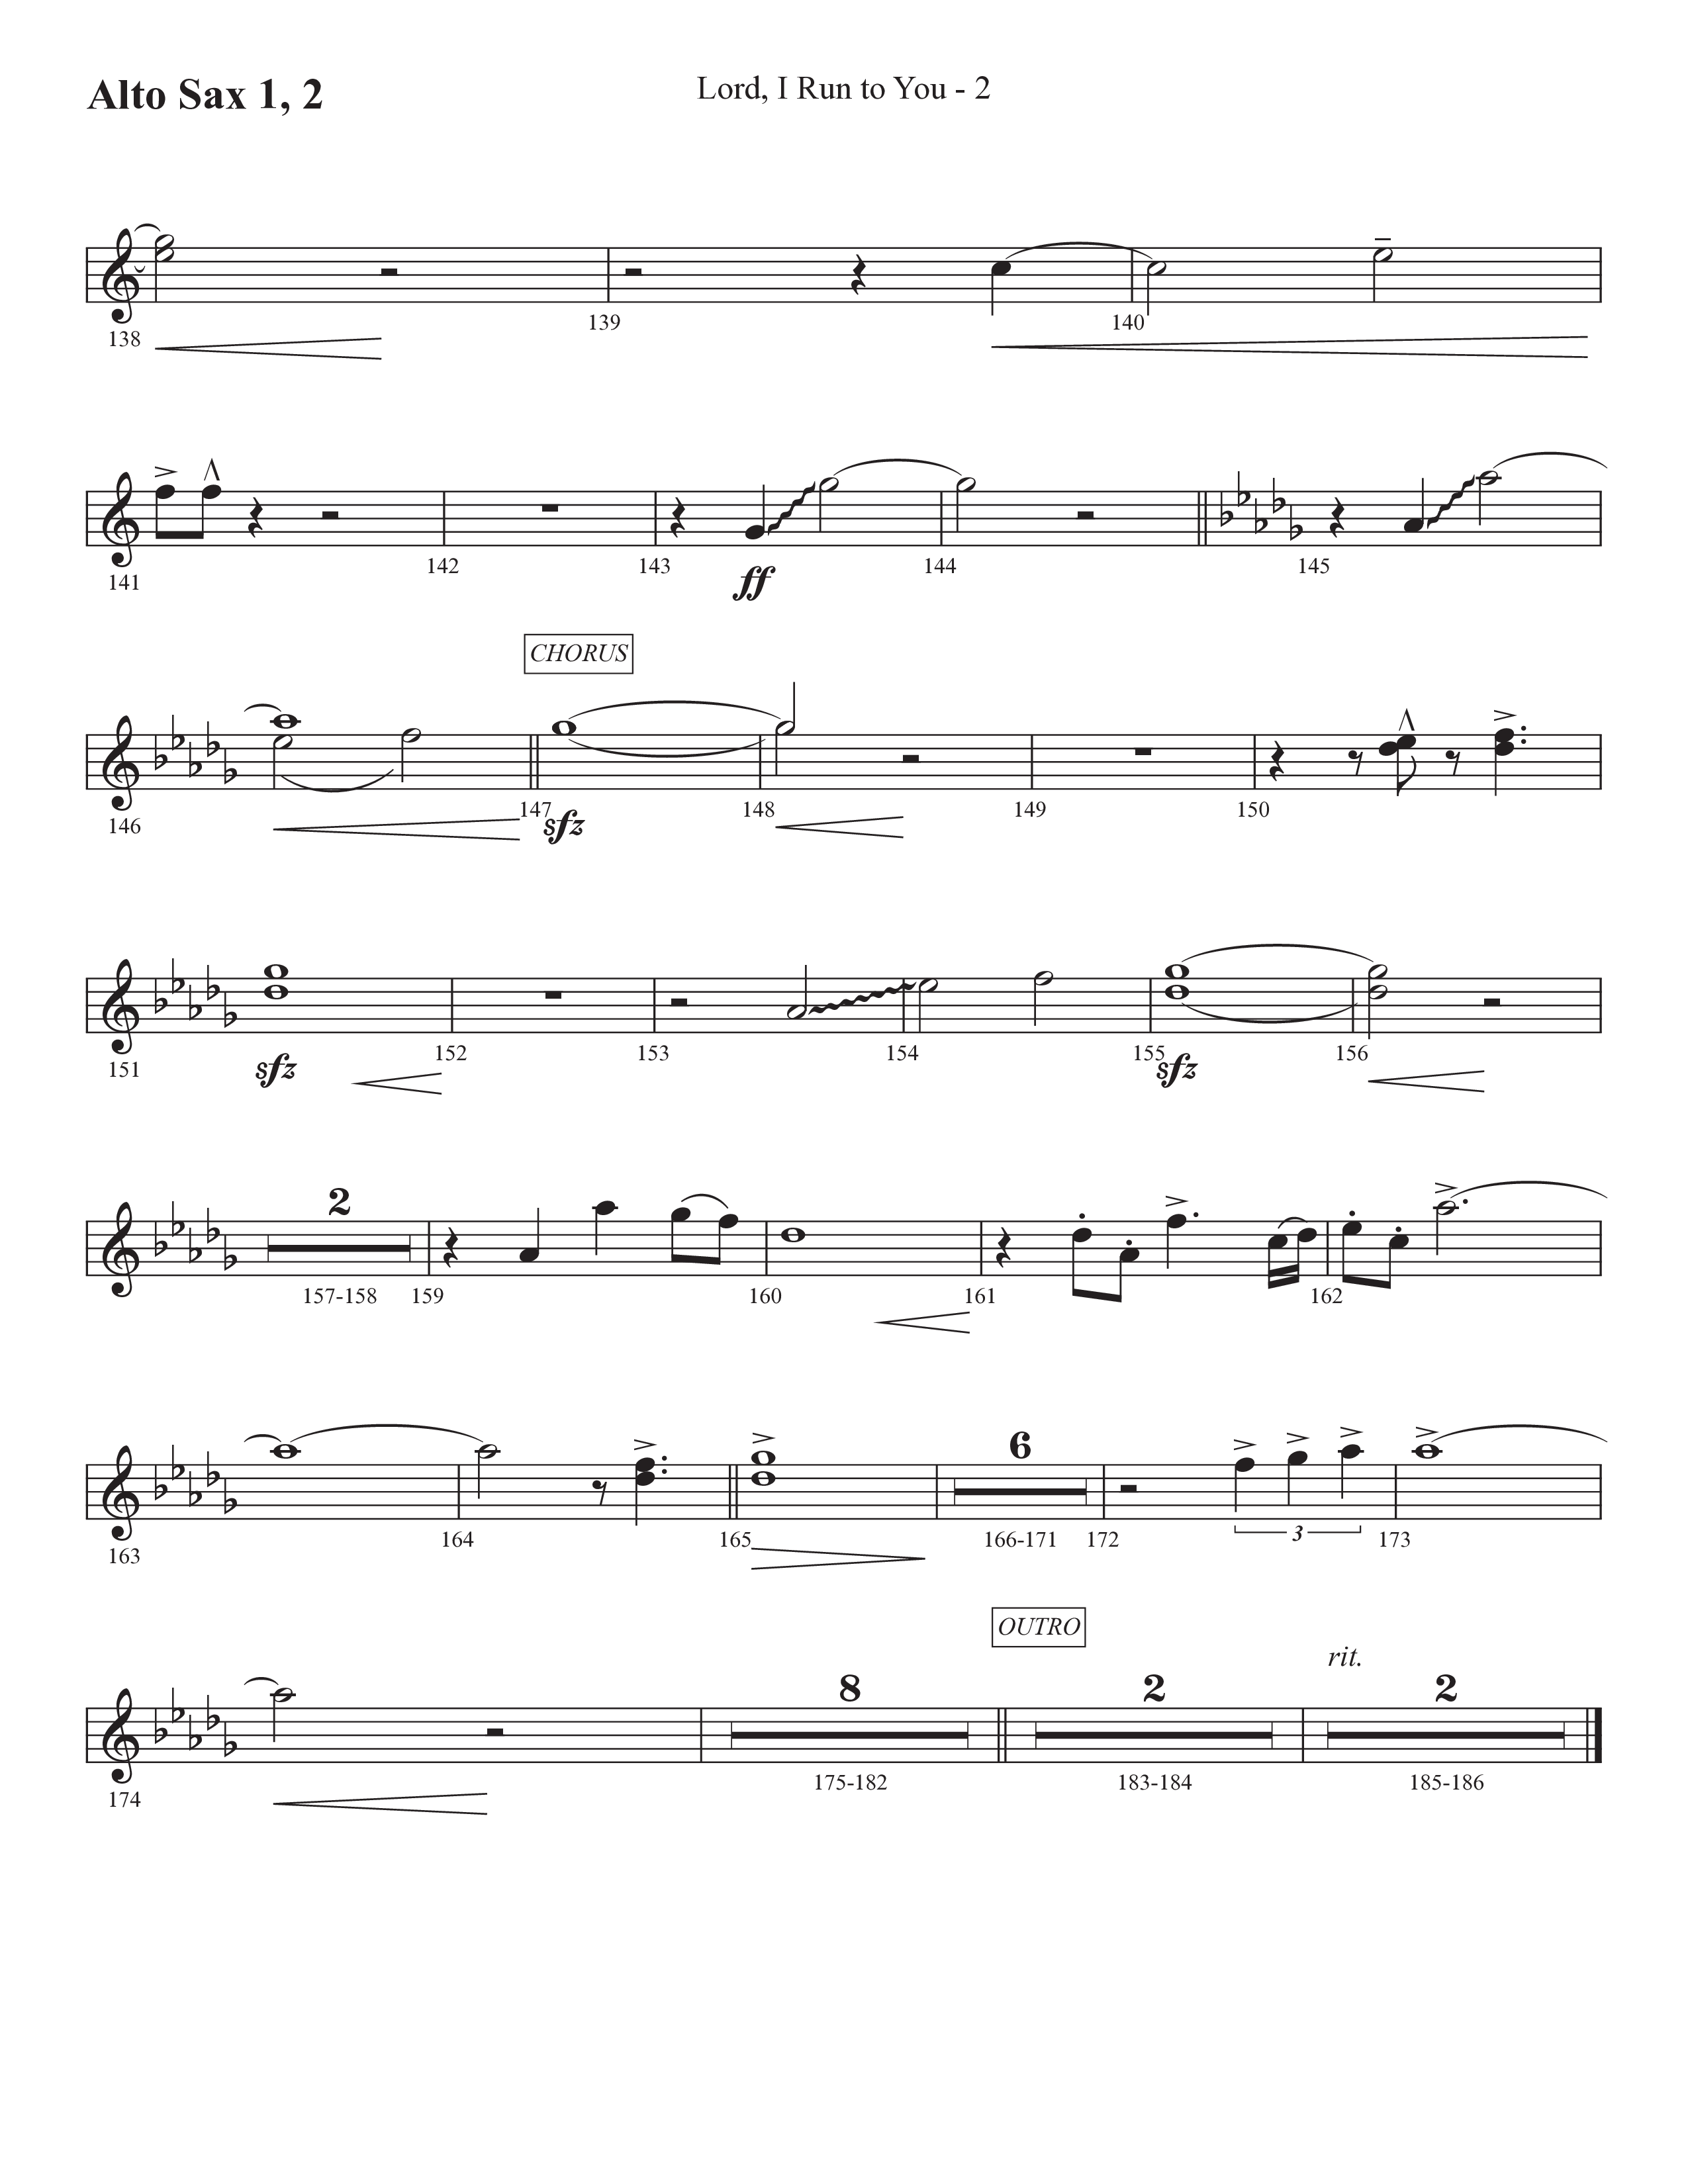 Lord I Run To You (Choral Anthem SATB) Alto Sax 1/2 (Prestonwood Worship / Prestonwood Choir / Arr. Michael Neale / Arr. Carson Wagner)